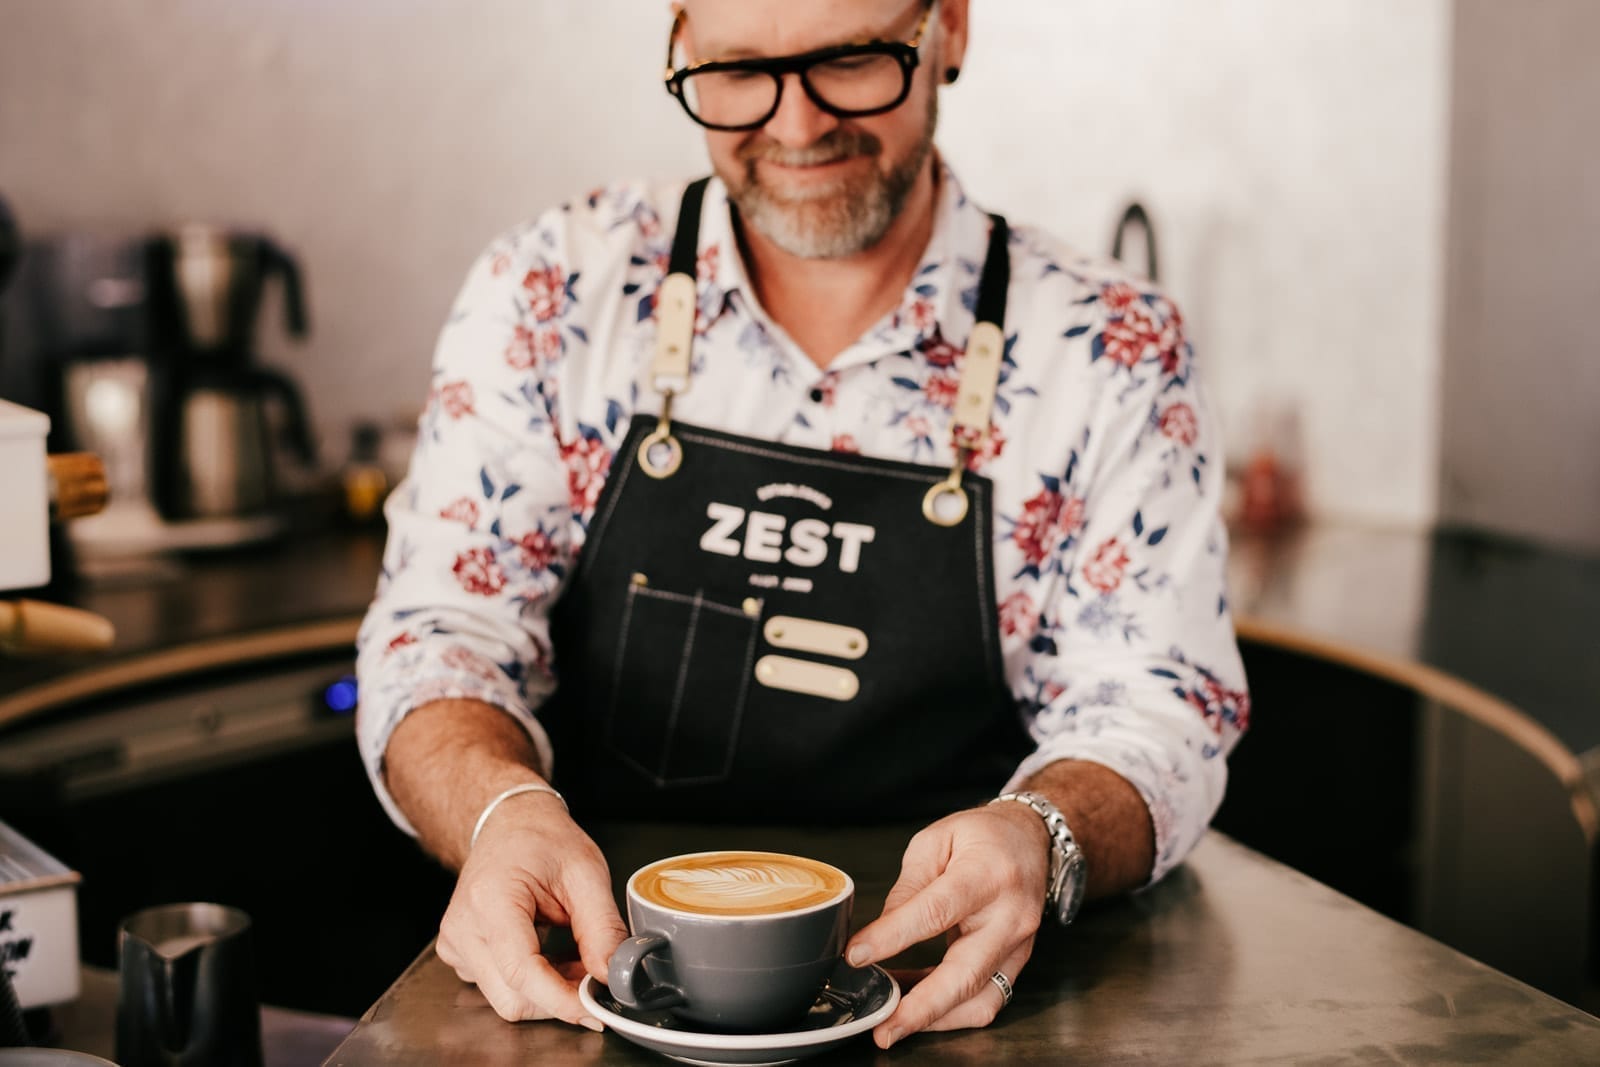 Zest Coffee café owner